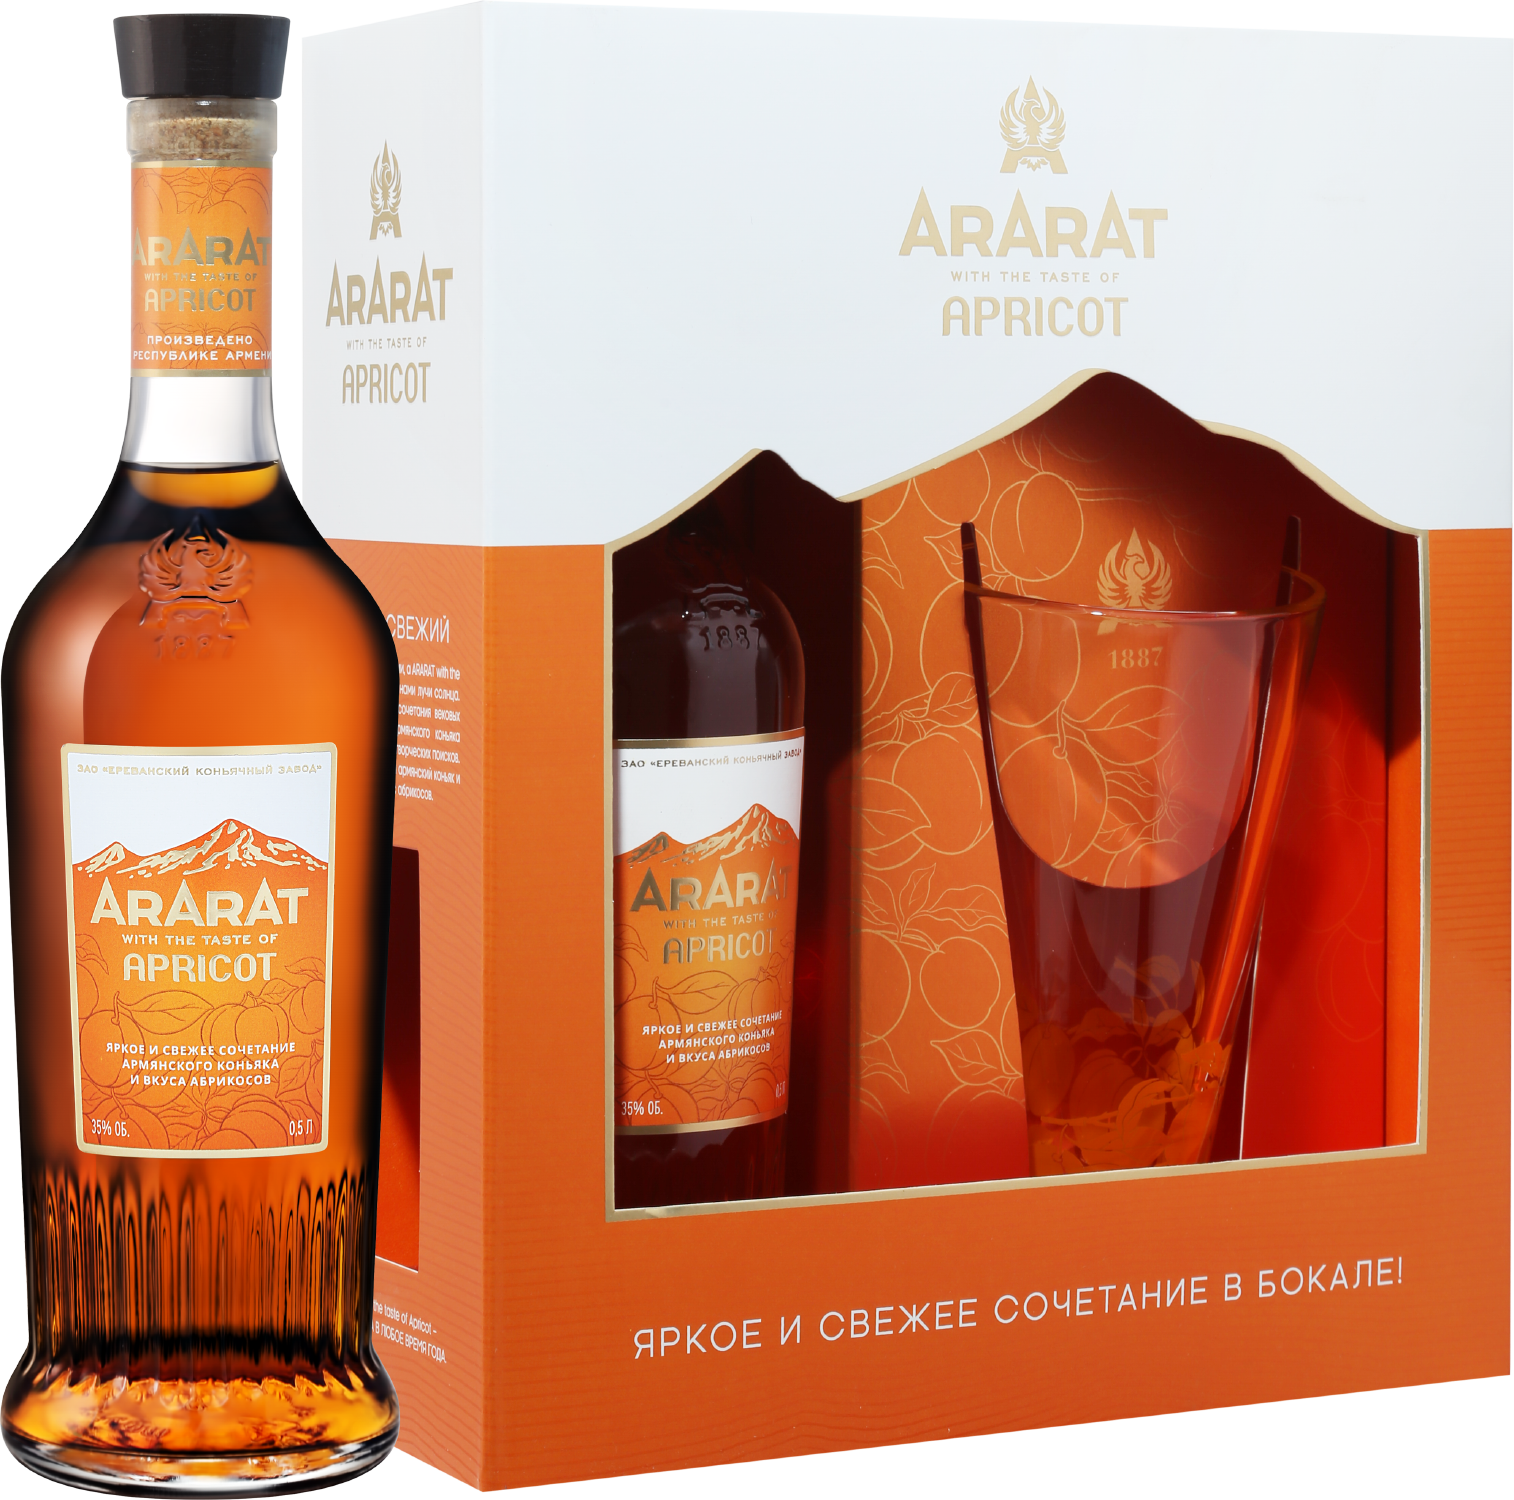 ARARAT Apricot (gift box with a glass) ararat apricot gift box